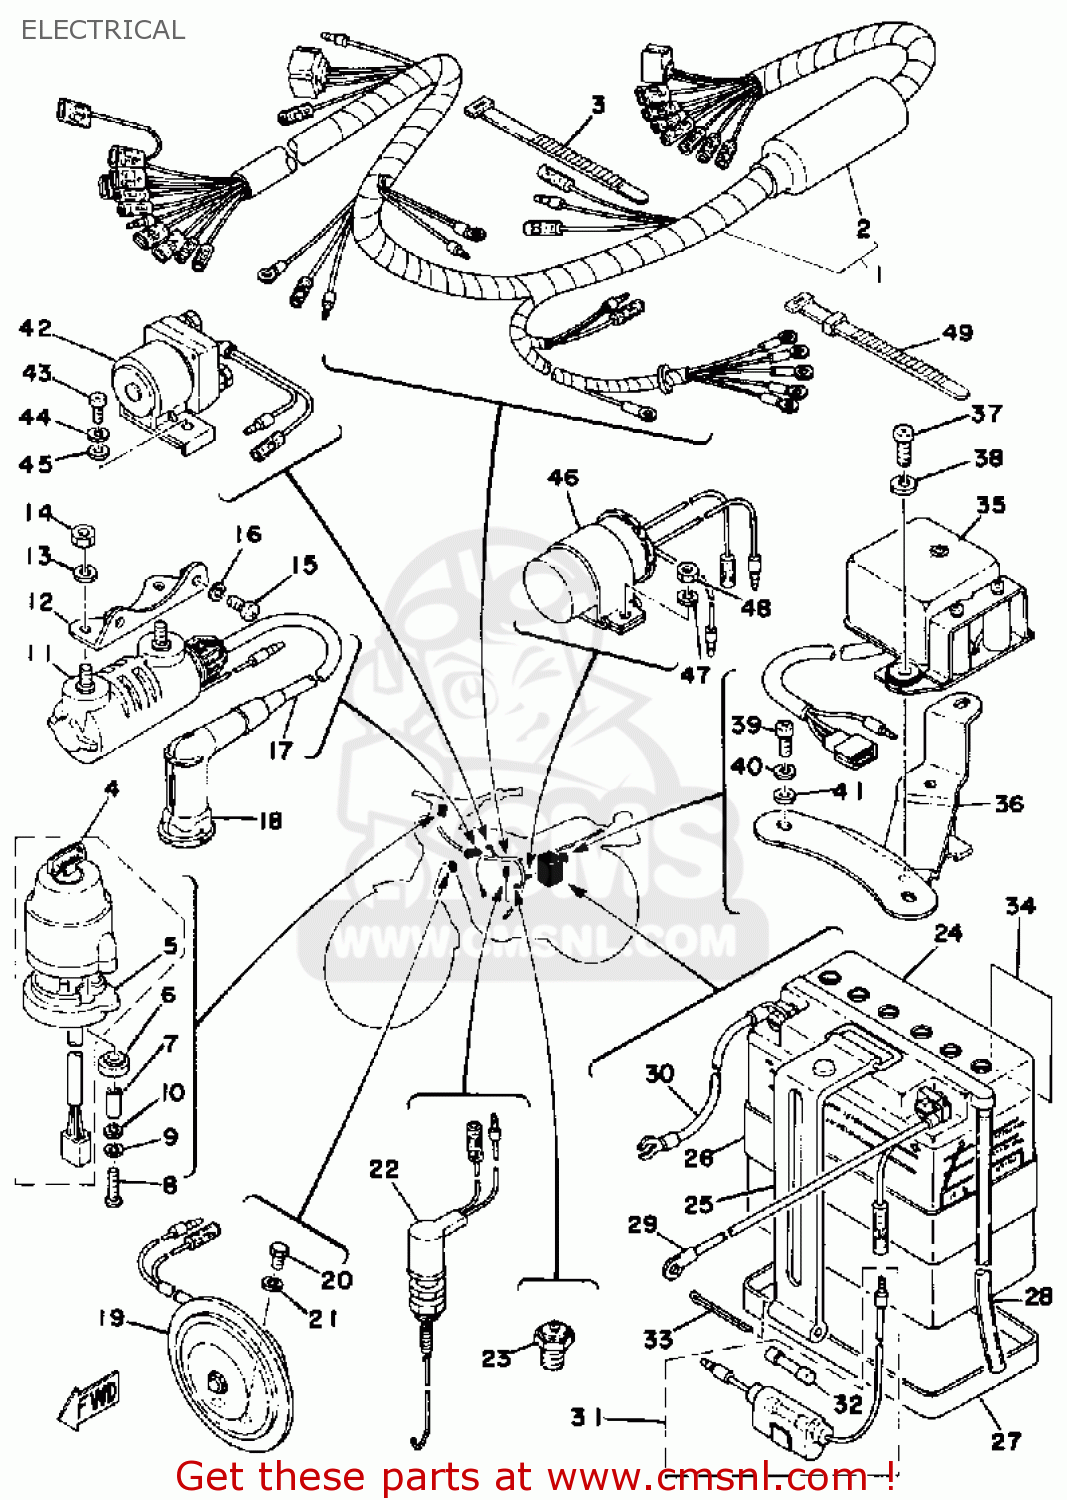 1976 yamaha dt175 wiring diagram